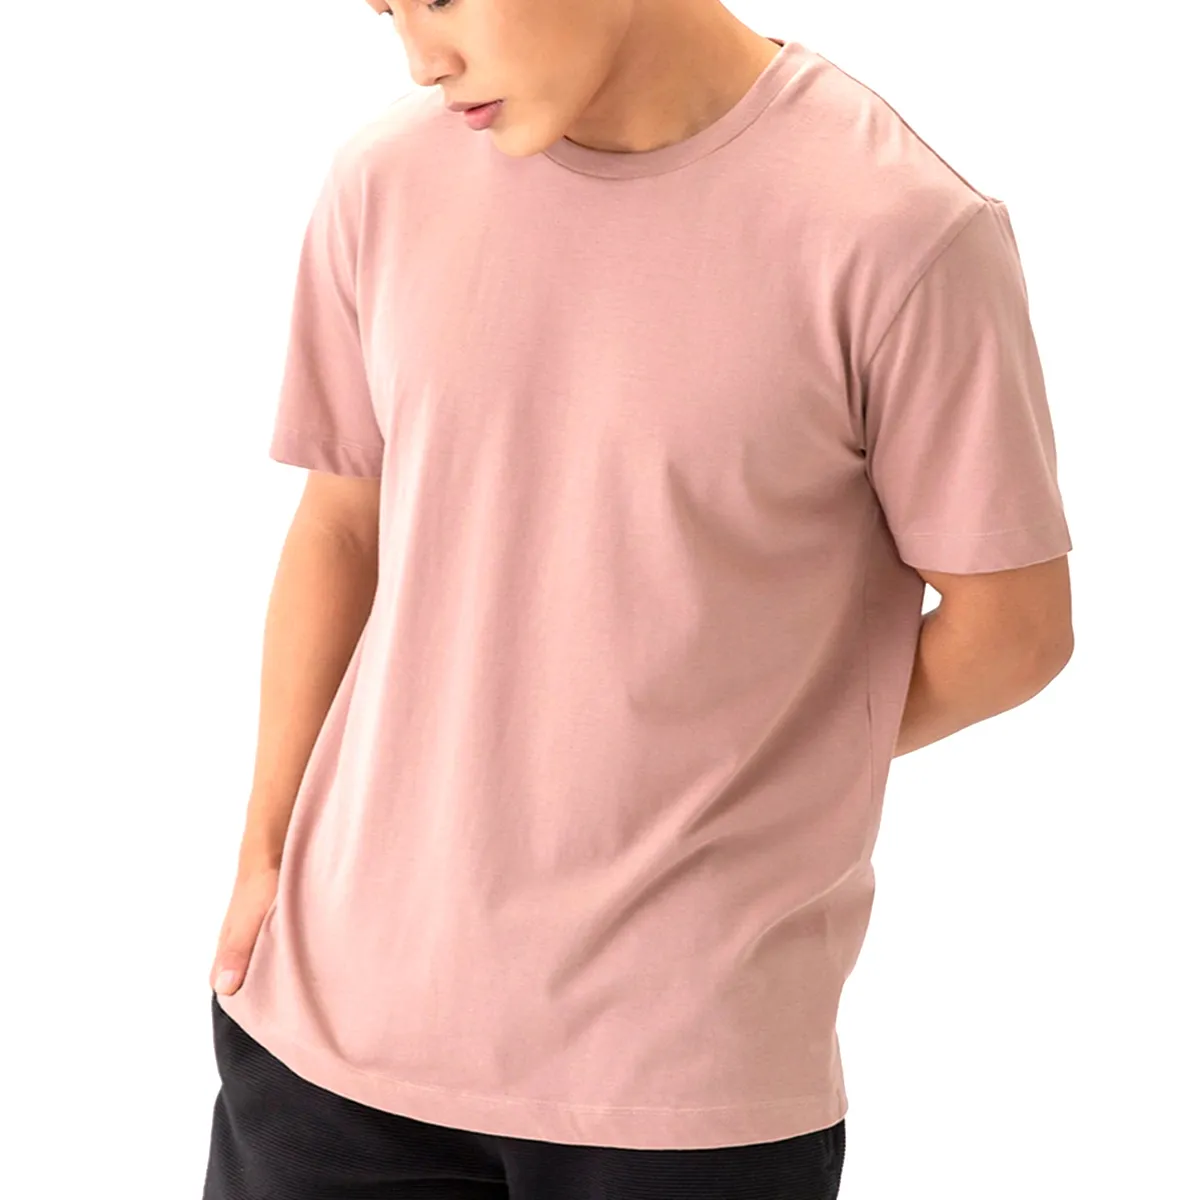 पुरुष टी शर्ट कस्टम मुद्रित चित्र टी-शर्ट मुद्रण लोगो 100% कपास टी-शर्ट अपनी खुद की शर्ट डिजाइन करें